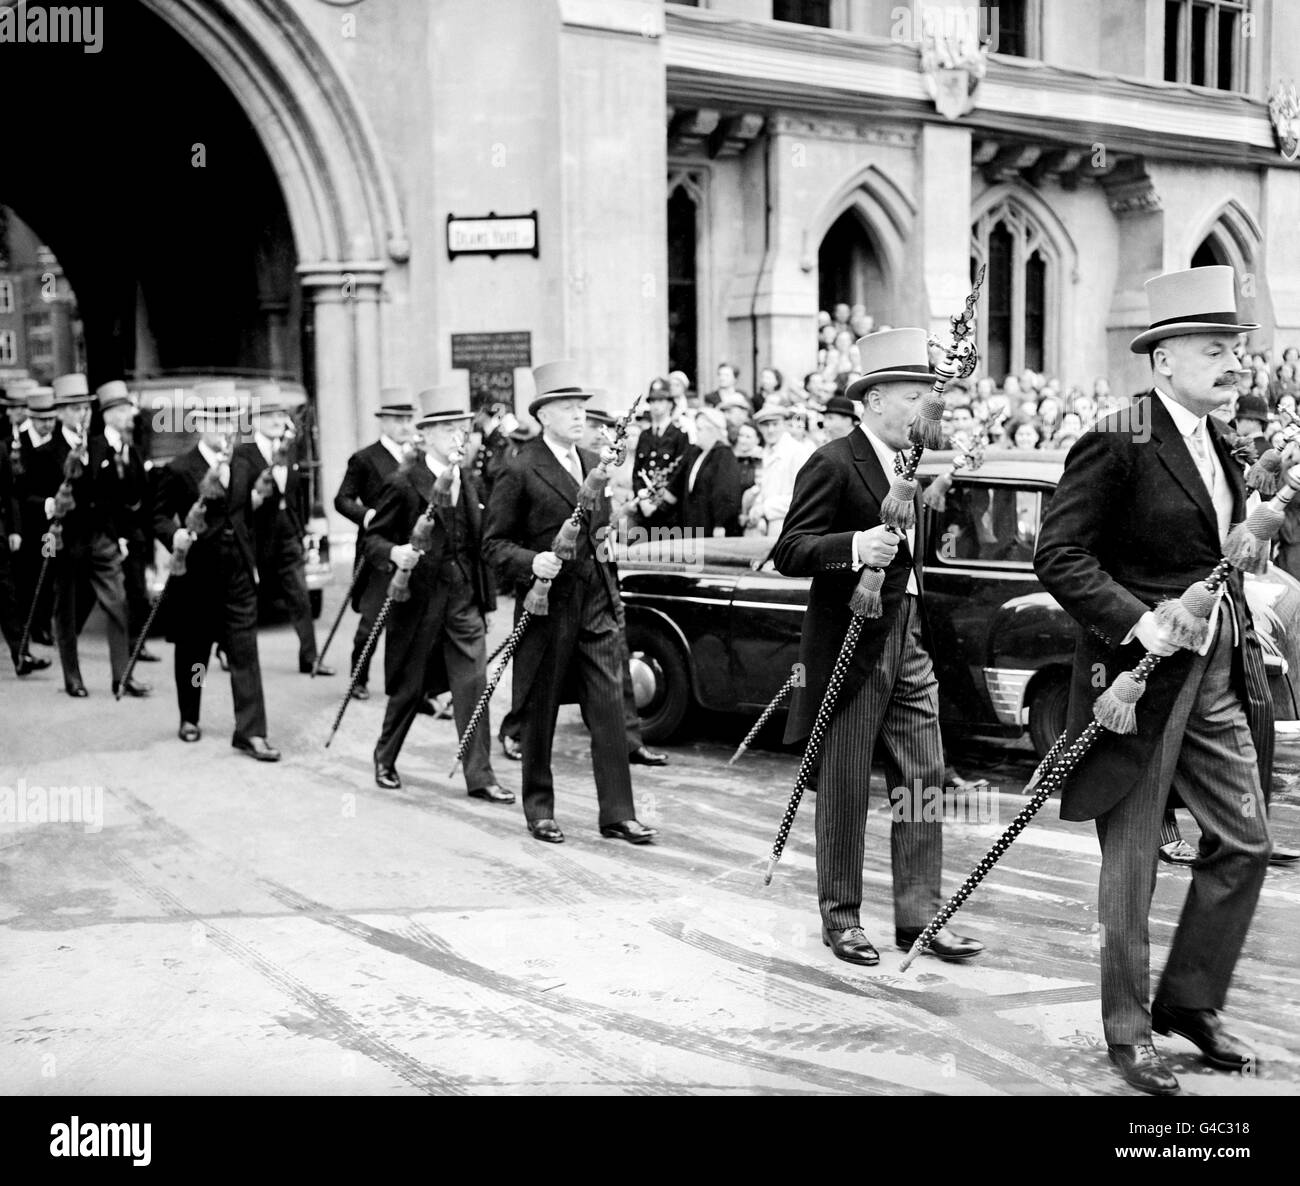 Los miembros del honorable cuerpo de caballeros de armas llevan sus polehachas altamente decorativas mientras avanzan a la Abadía de Westminster para un ensayo de la Coronación. Foto de stock